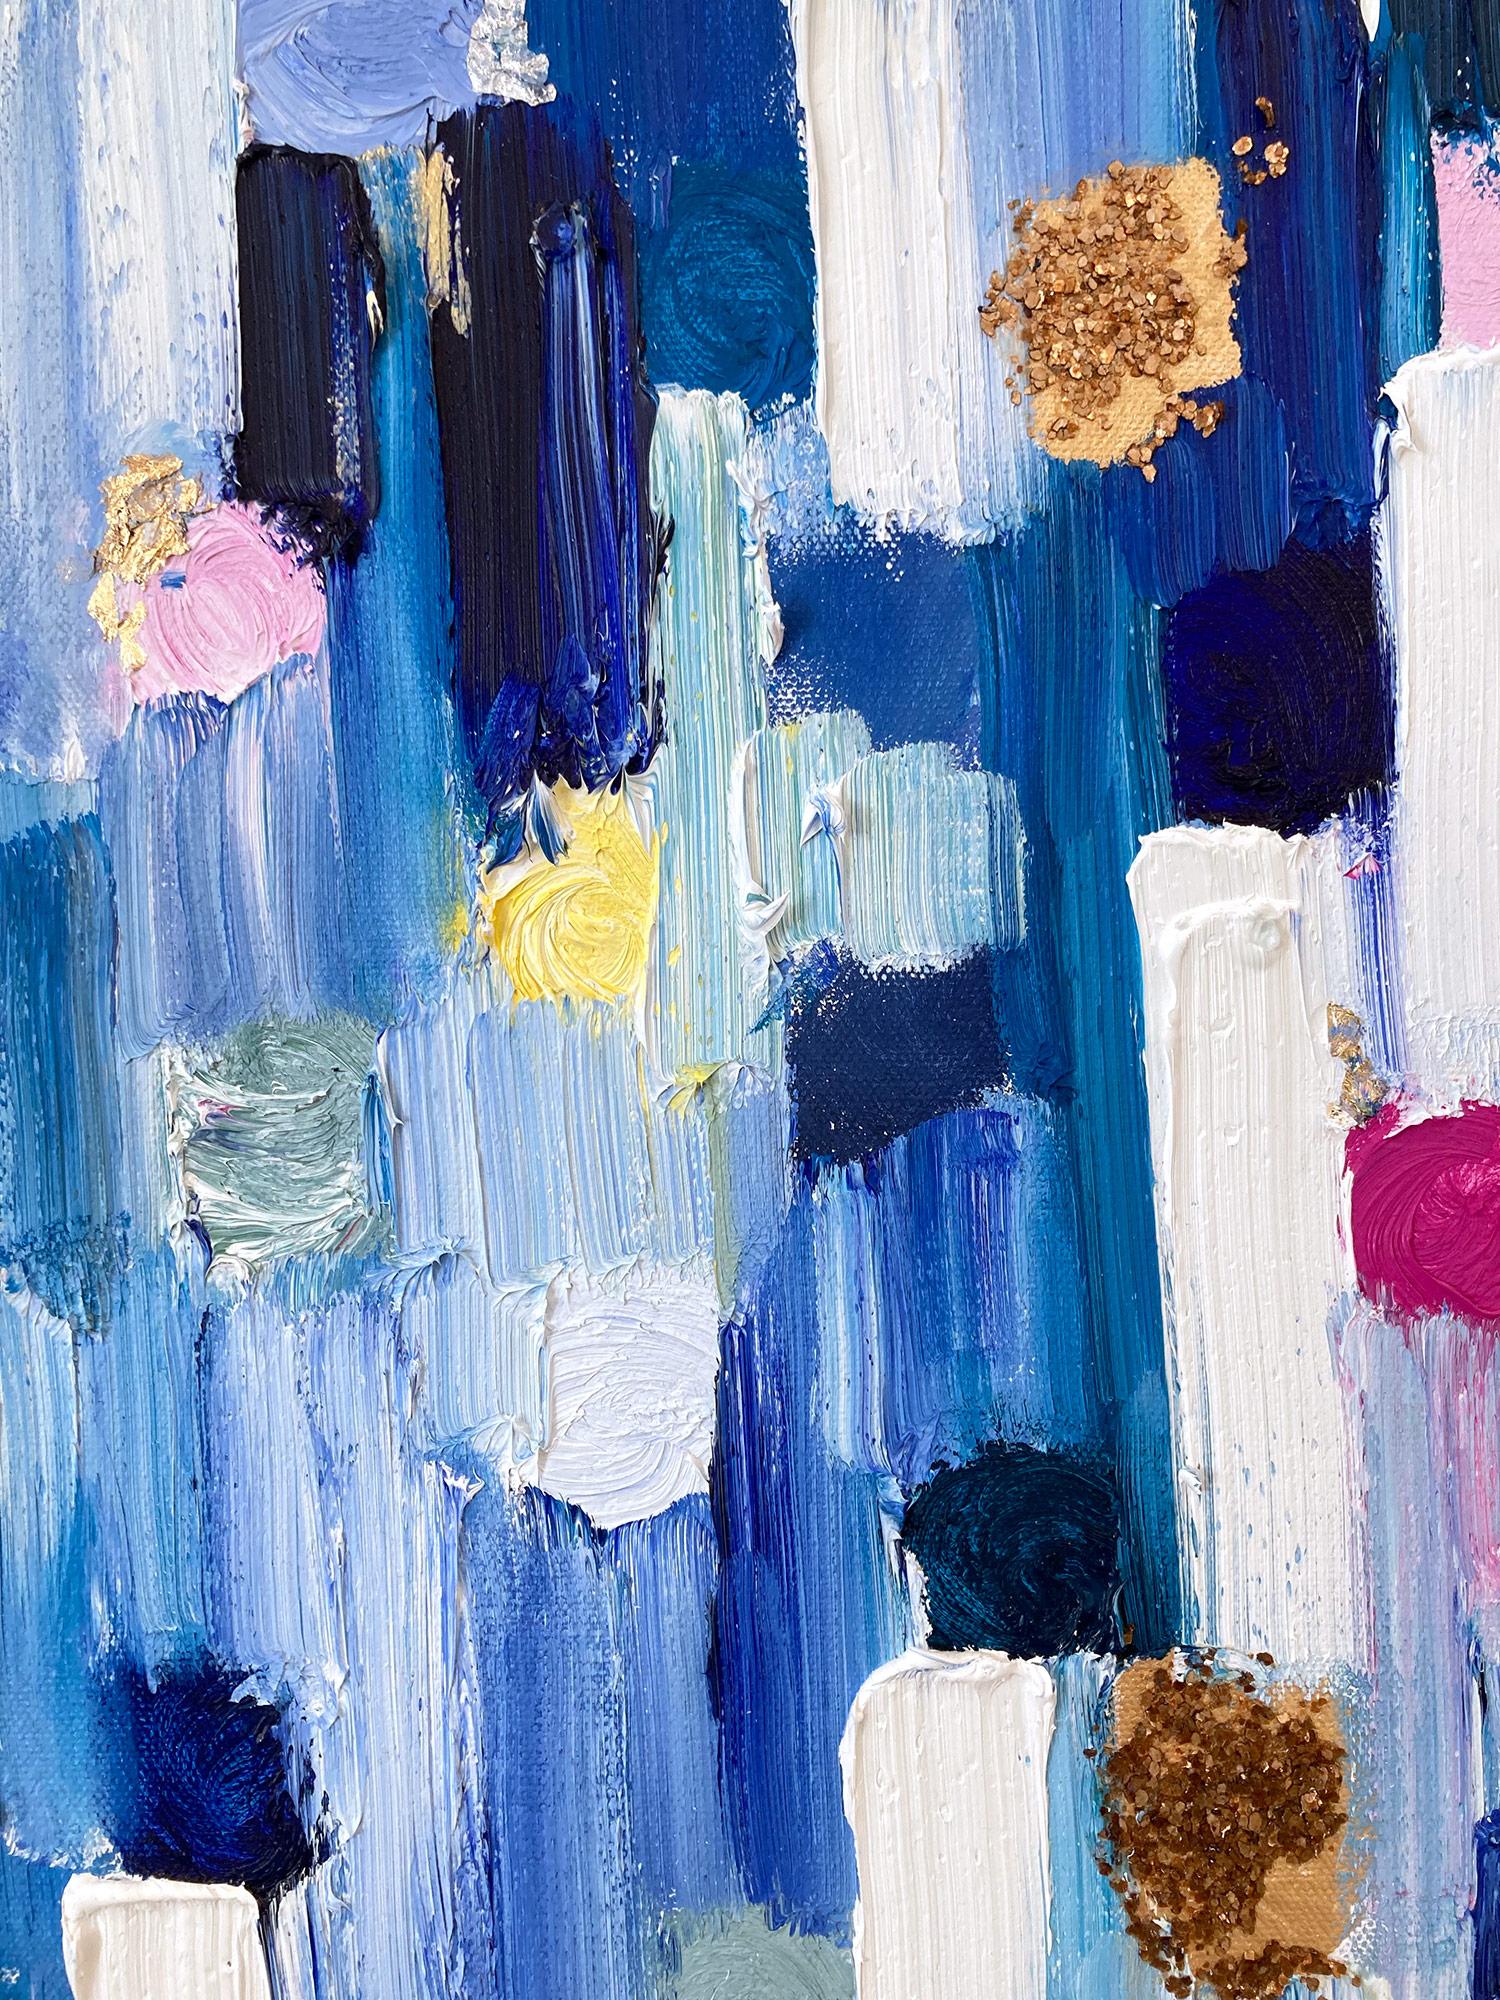 « Droping Dots - St Tropez », peinture abstraite colorée à l'huile sur toile, technique mixte  - Bleu Abstract Painting par Cindy Shaoul